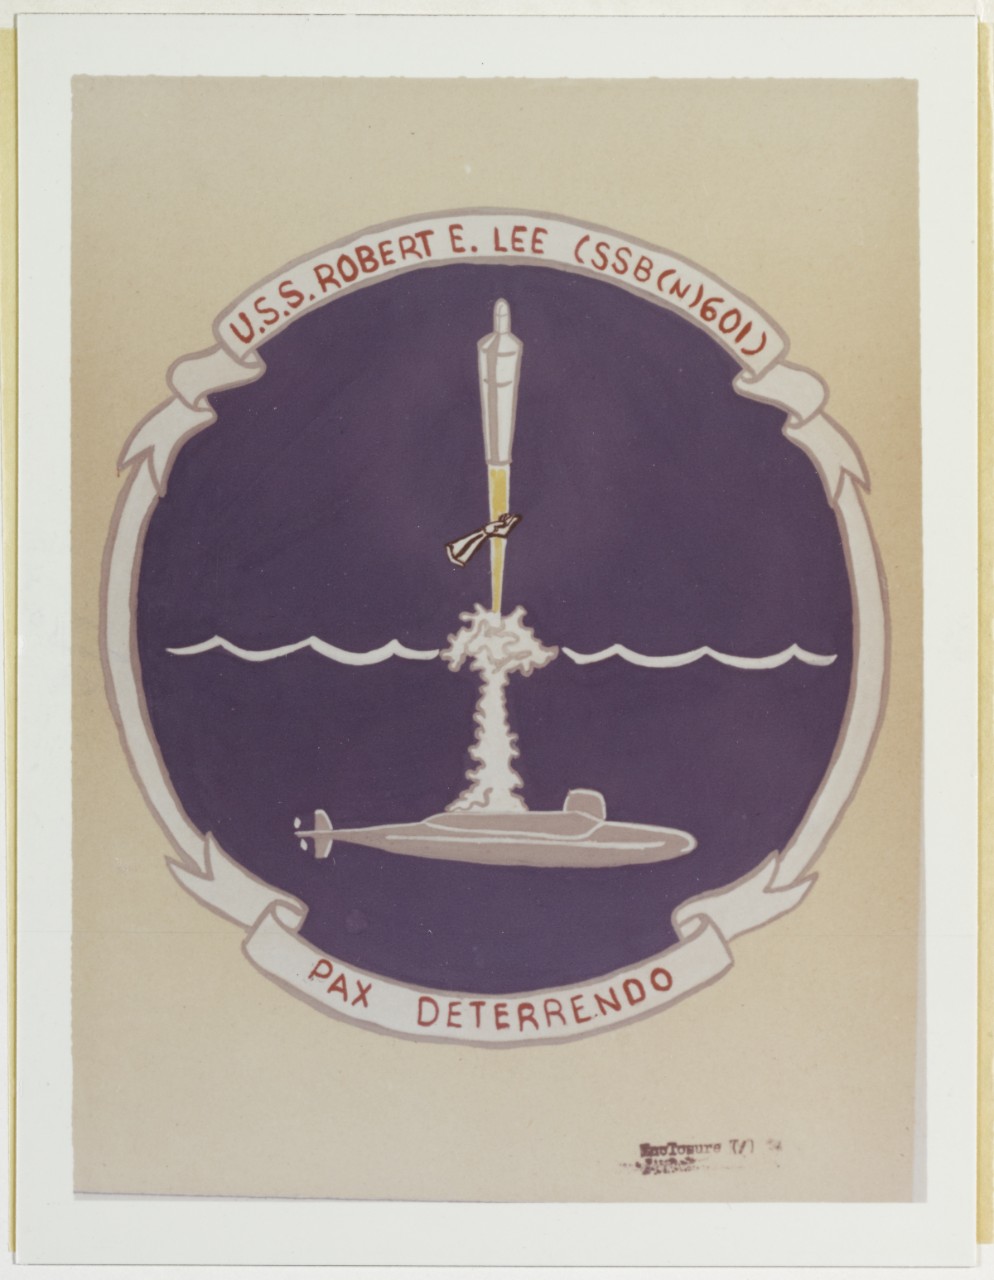 Insignia: USS ROBERT E. LEE (SSBN-601), 1960